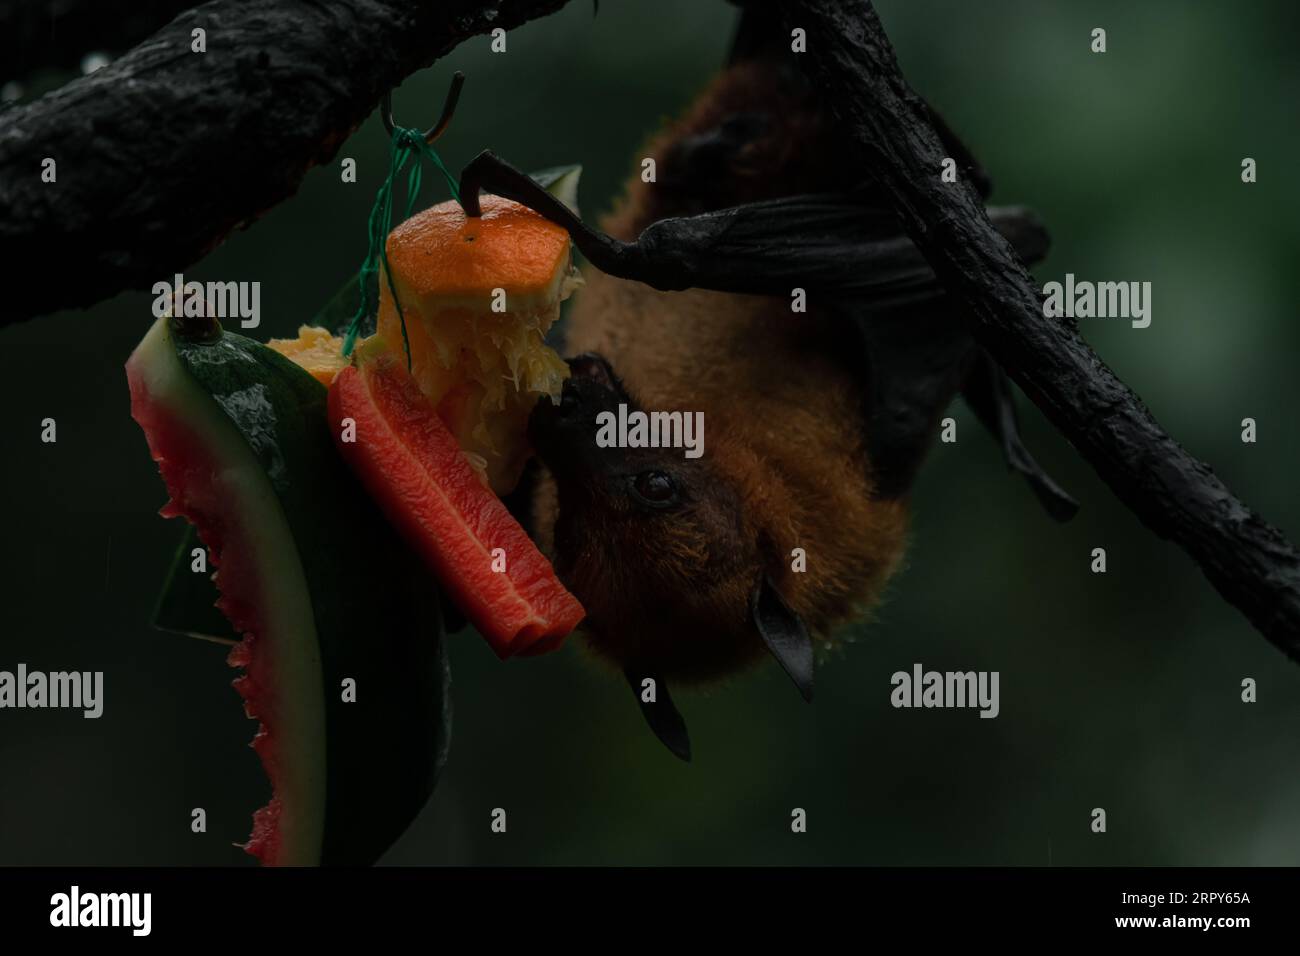 Volpe volanti dalla testa grigia sull'albero capovolto mangiare frutta, immagine chiave scura orizzontale Foto Stock